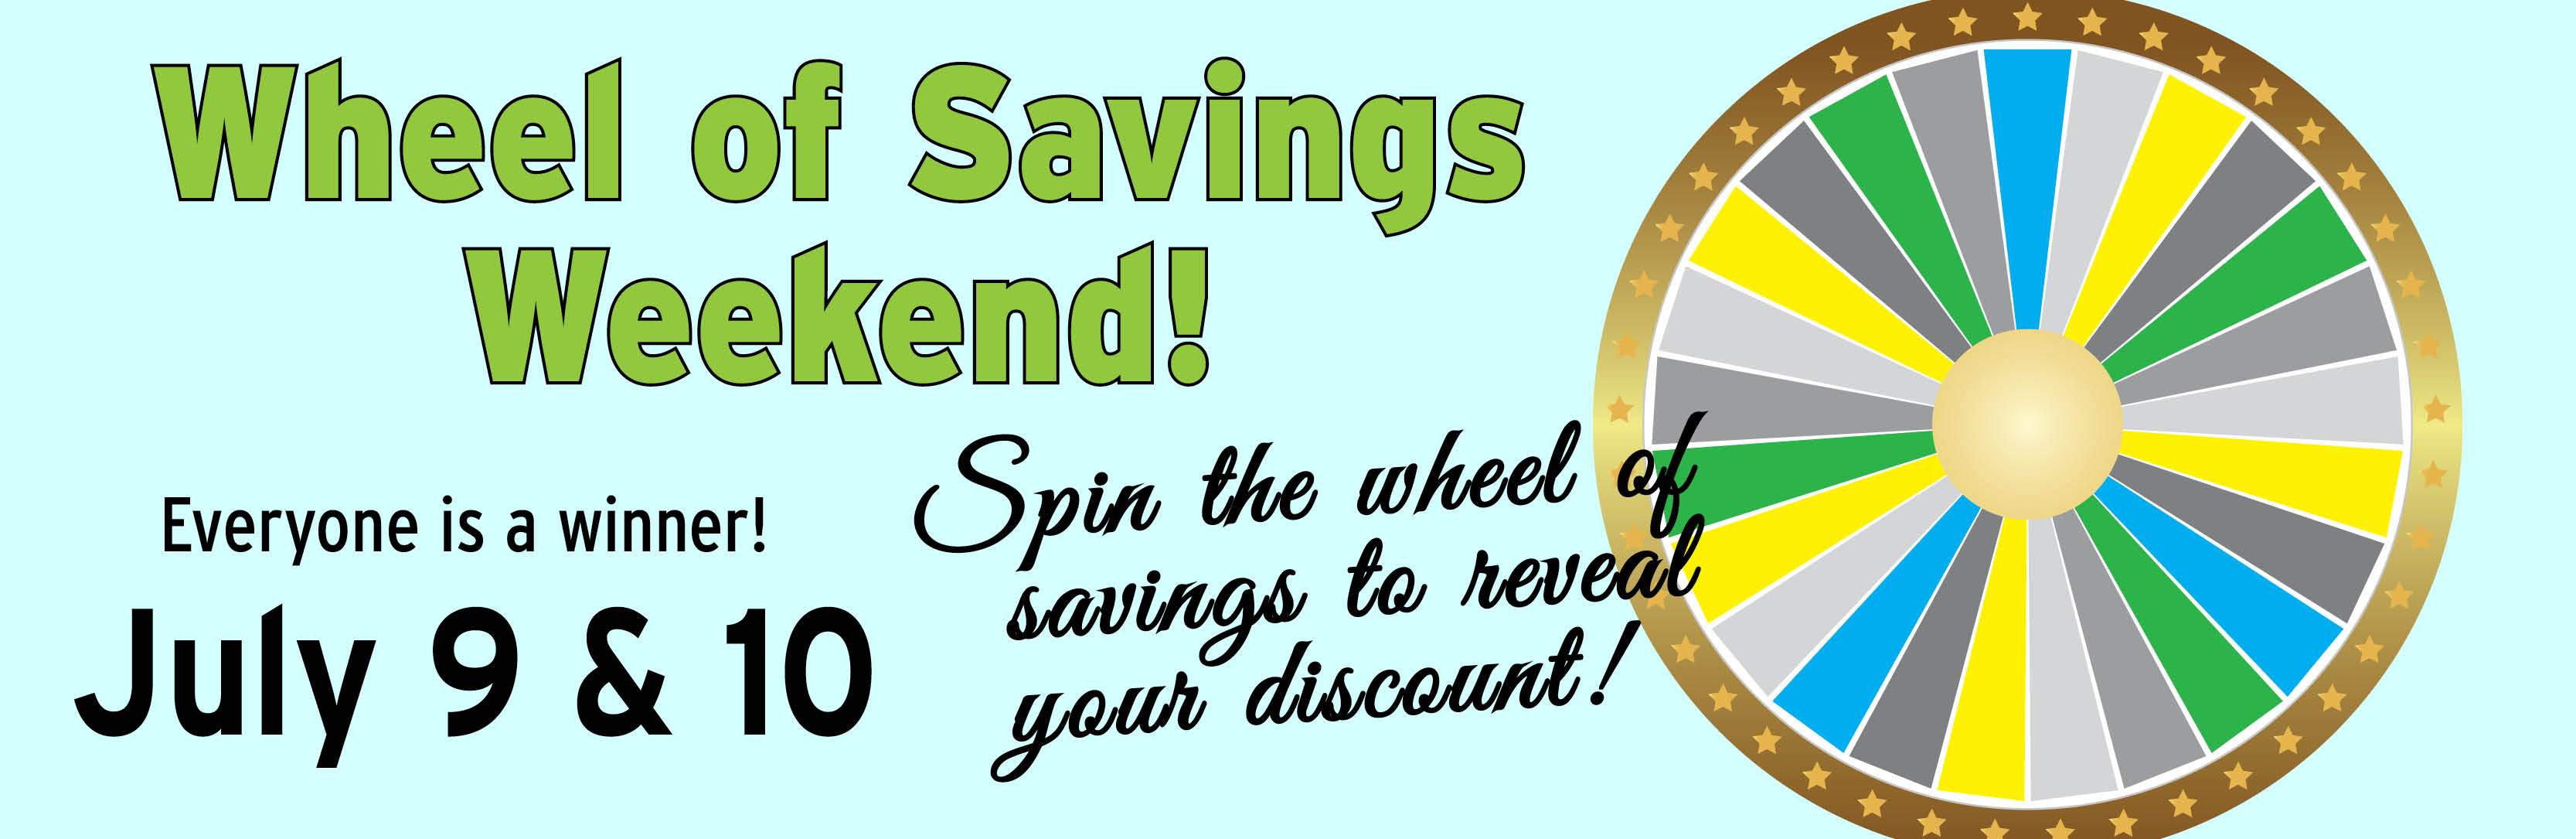 Wheel of Savings